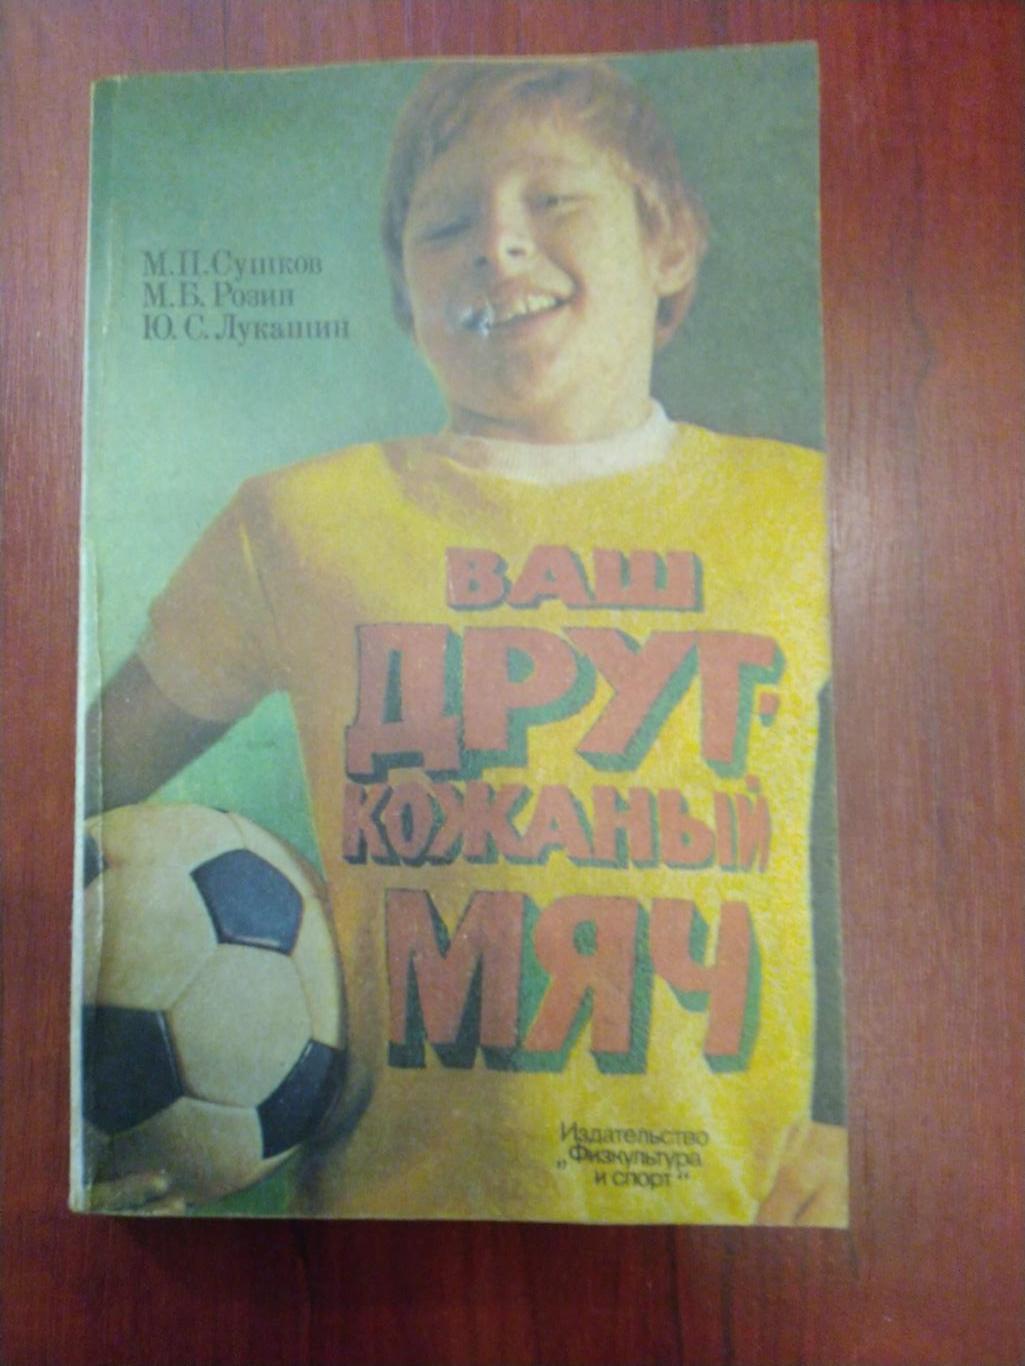 Ваш друг -кожаный мяч М. Сушков М. Розин Ю. Лукашин Москва ФиС 1983